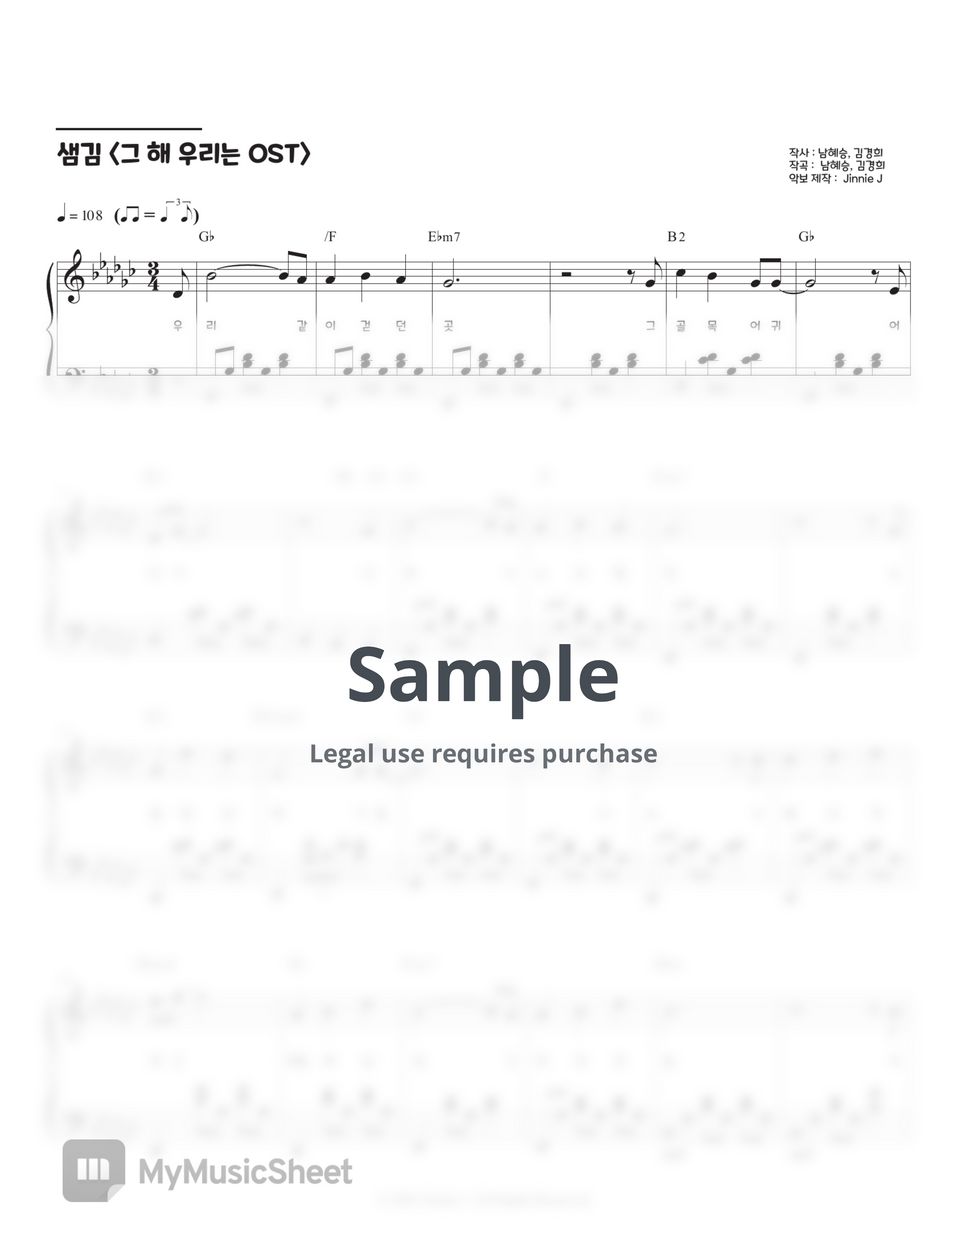 샘김 - 여름비 ( 그 해 우리는 OST) (Gb key, G key) by Jinnie J